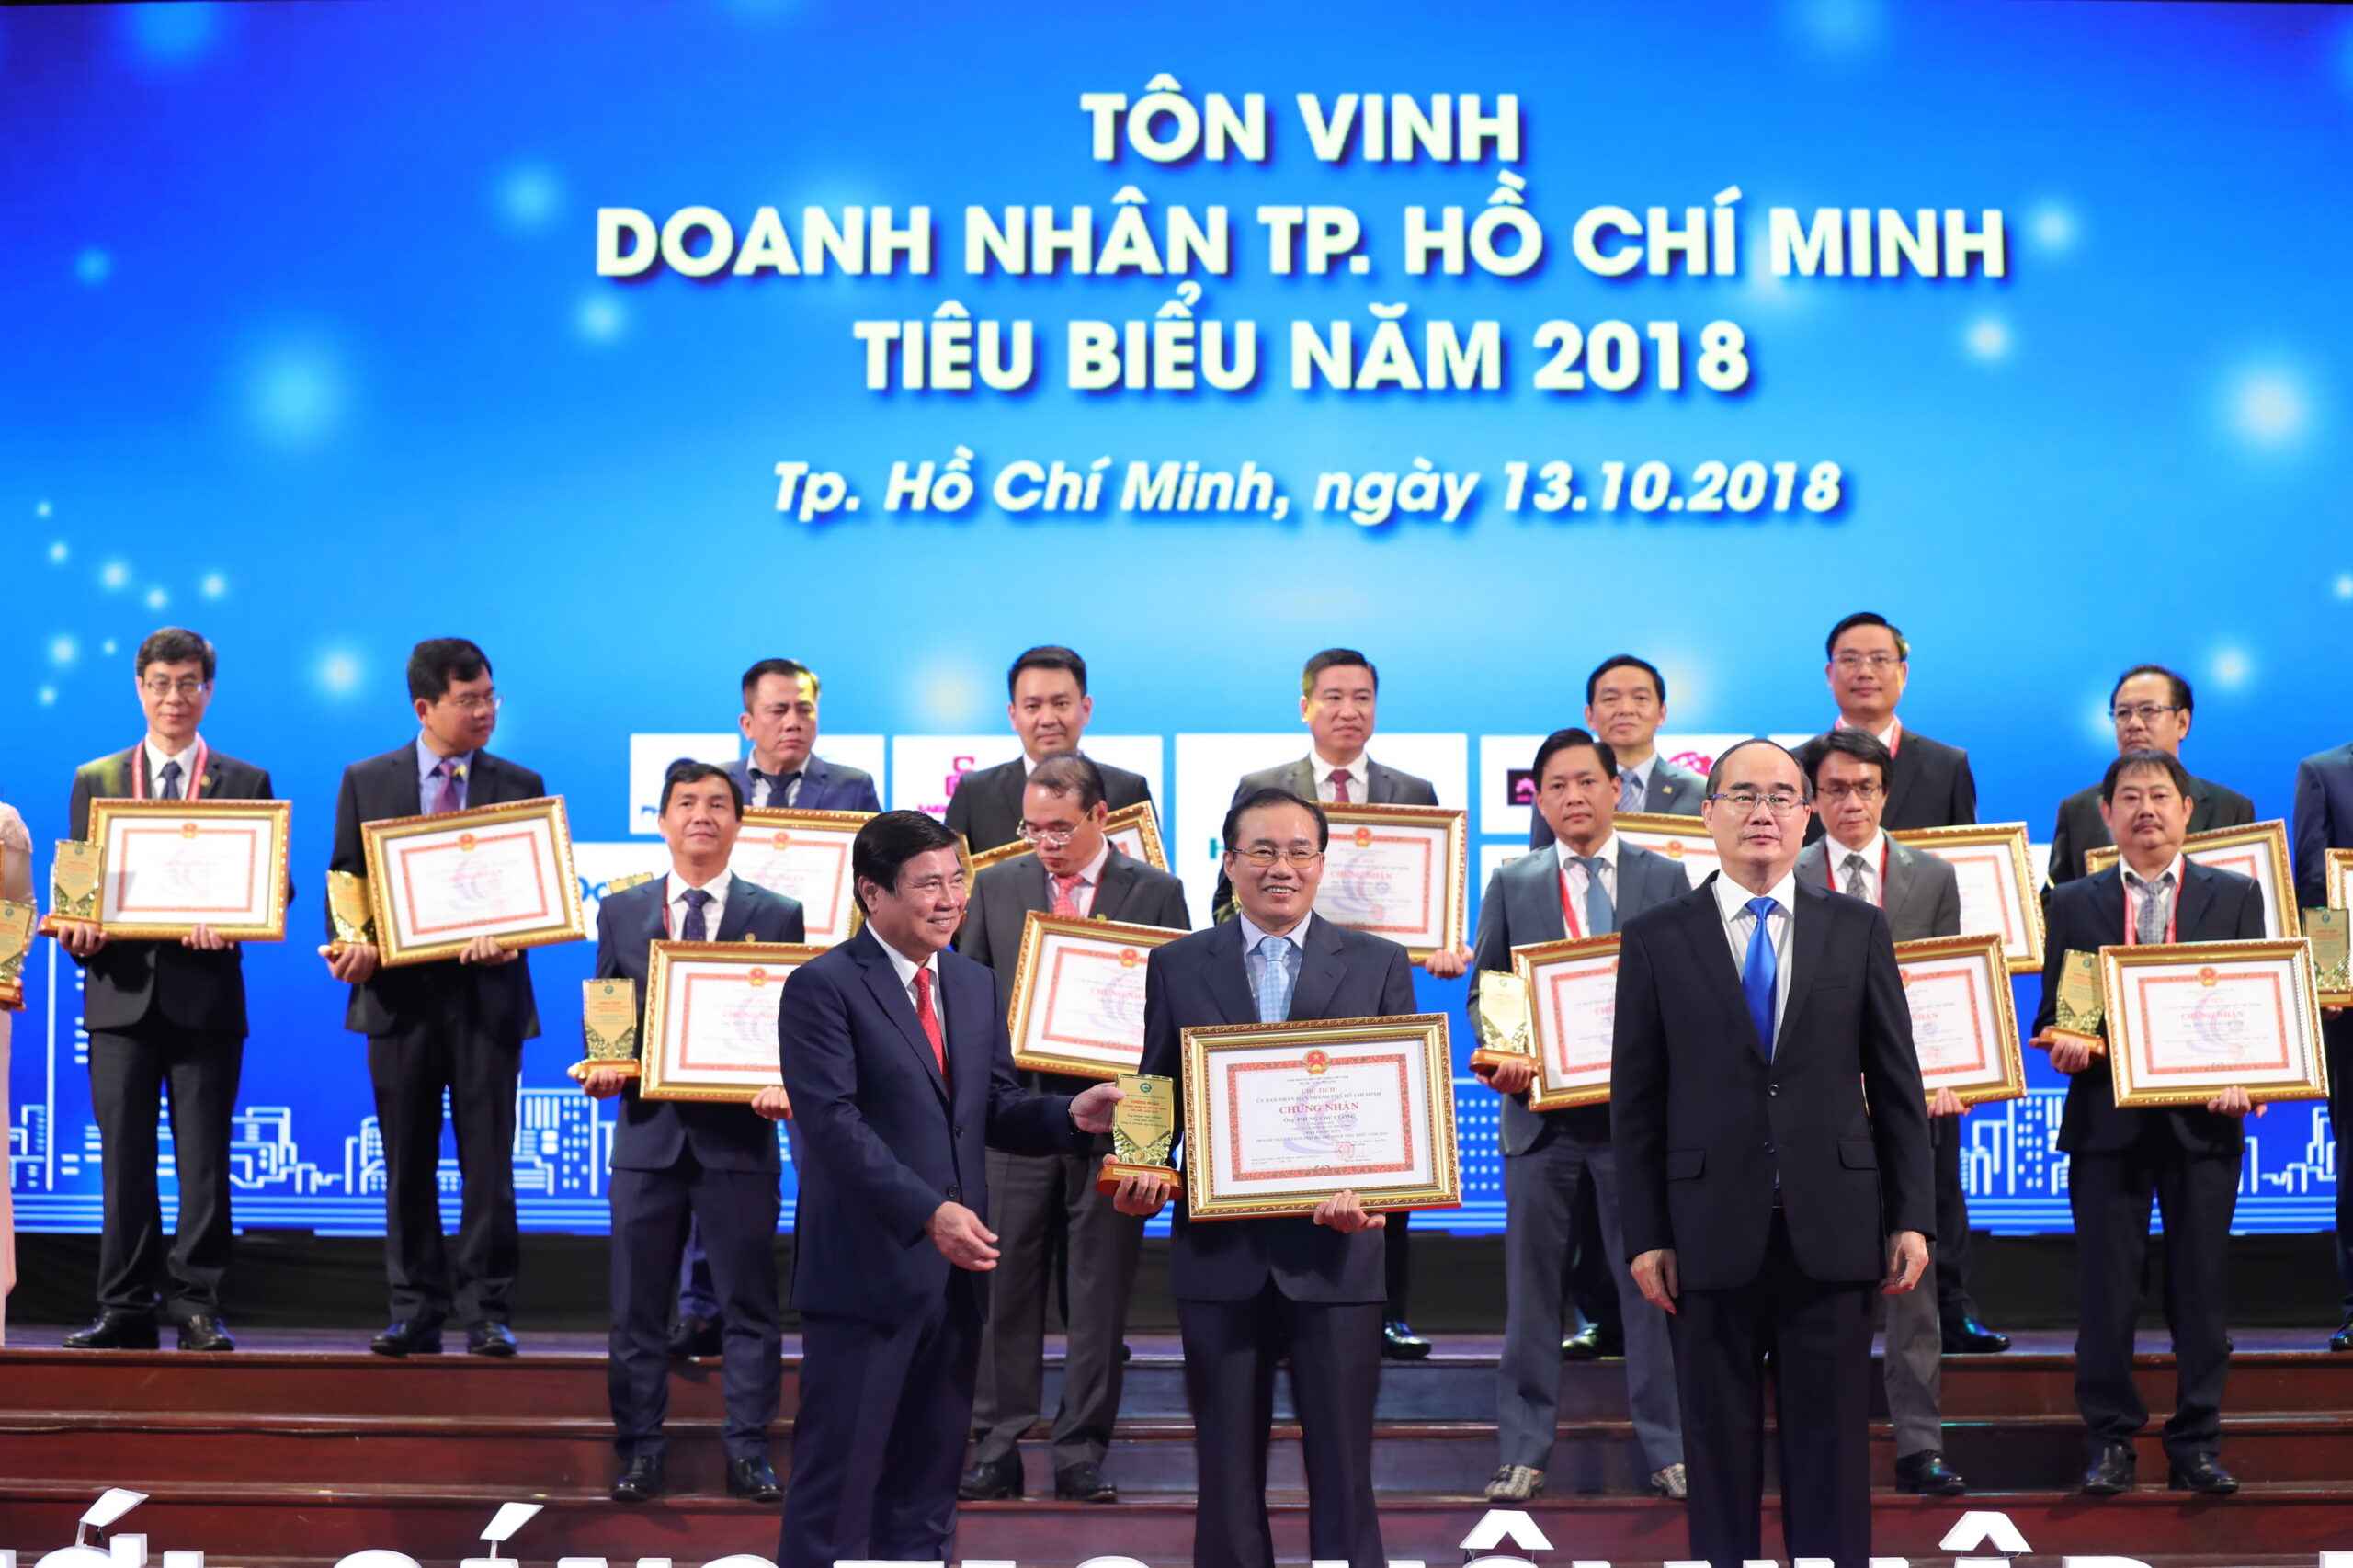 Ông Phùng Chu Cường TGĐ Công ty Phú Long được vinh danh “Doanh nhân và Doanh nhân TP HCM tiêu biểu năm 2018